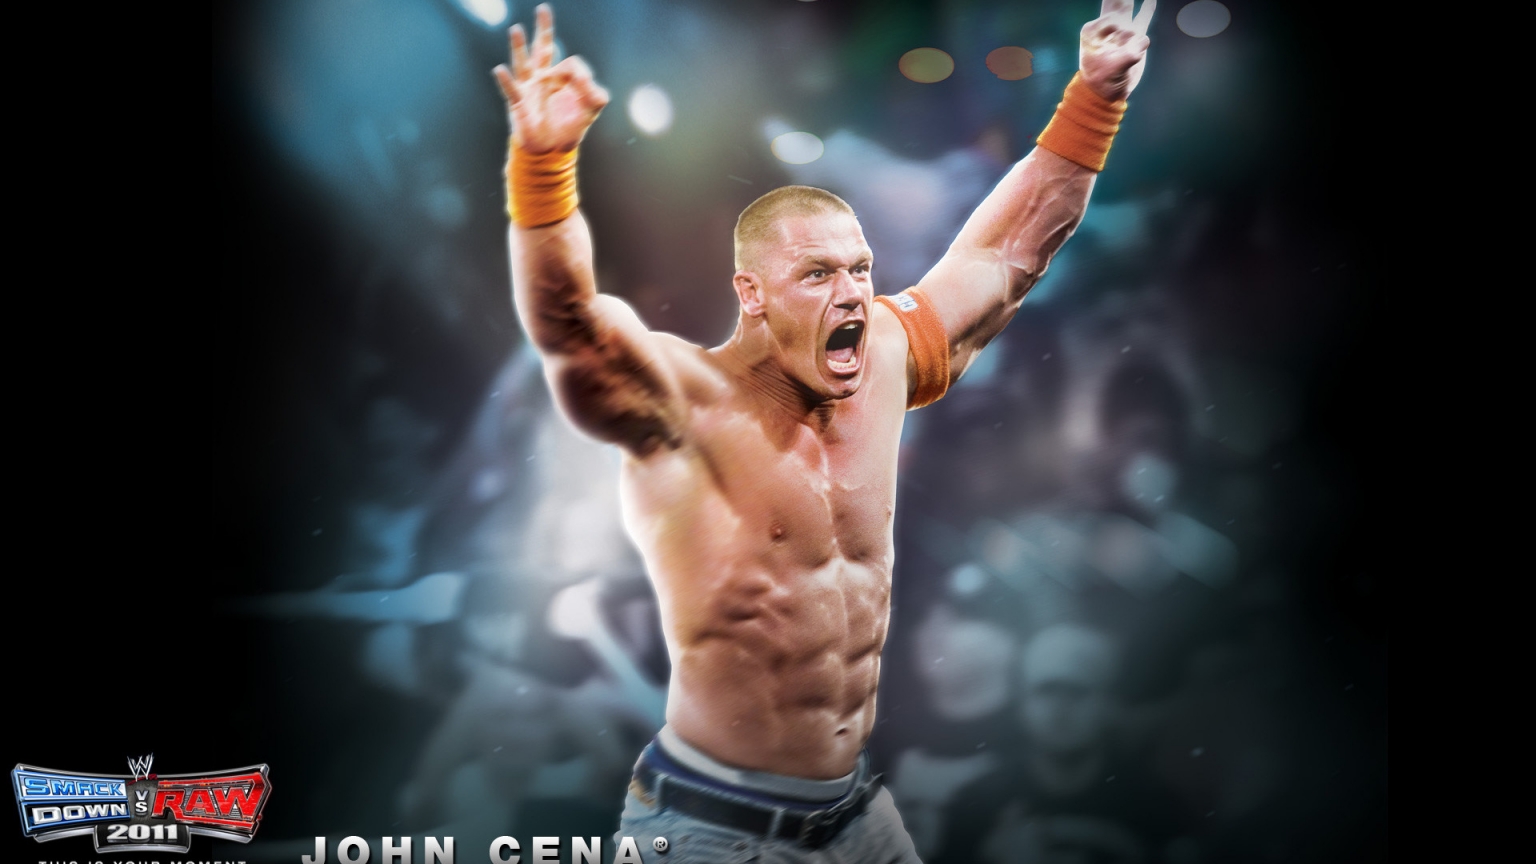 John Cena for 1536 x 864 HDTV resolution